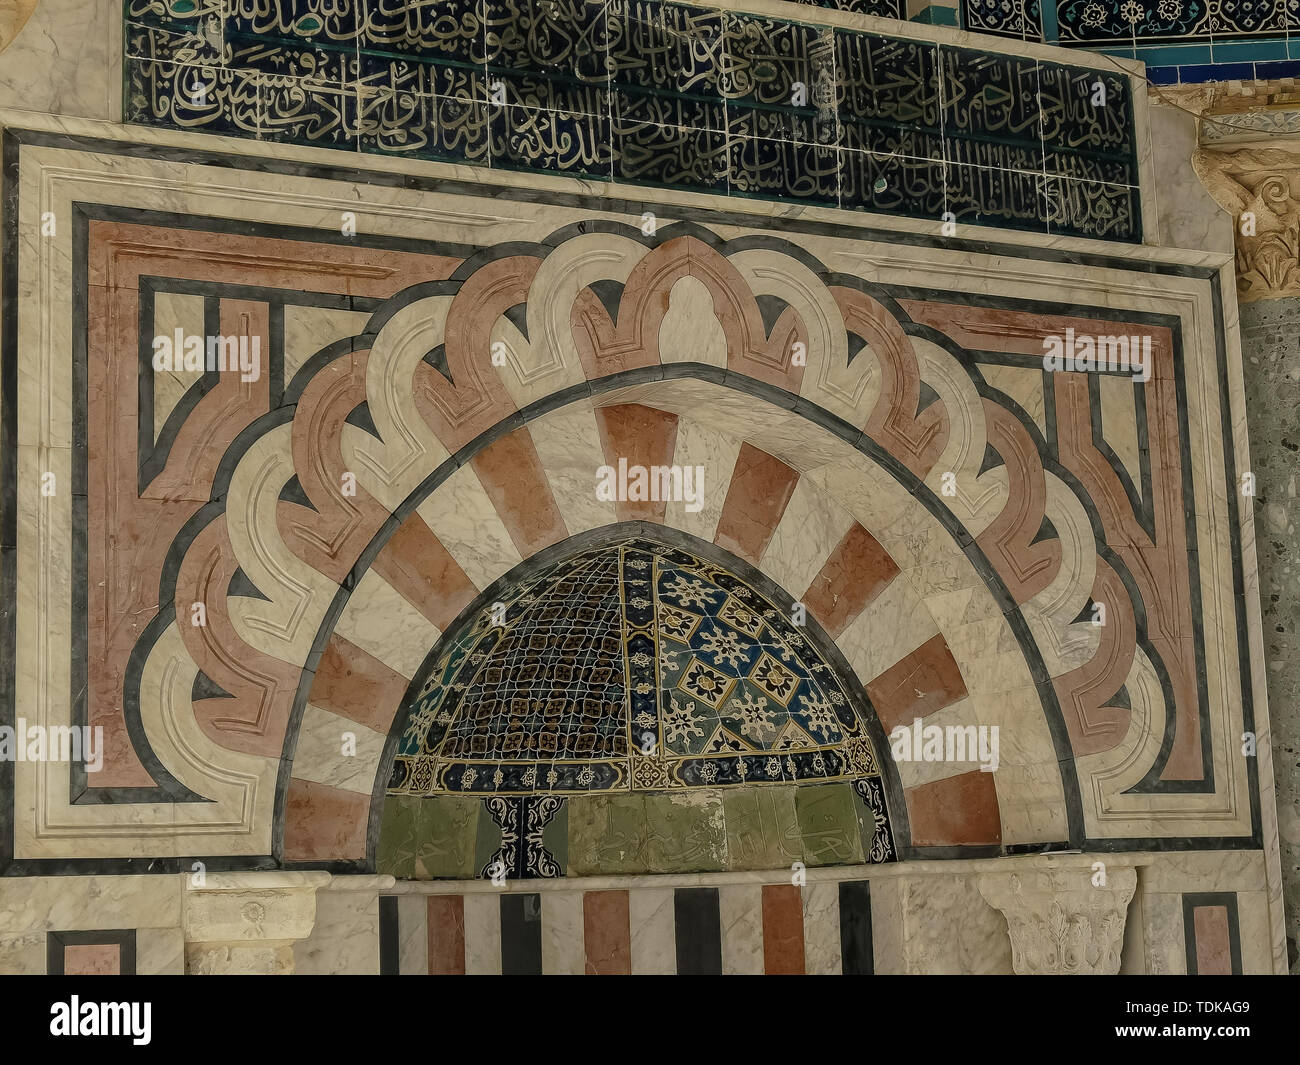 Large vue sur le dôme de la chaîne mihrab) qui indique la direction de la Mecque, à Jérusalem, Israël Banque D'Images